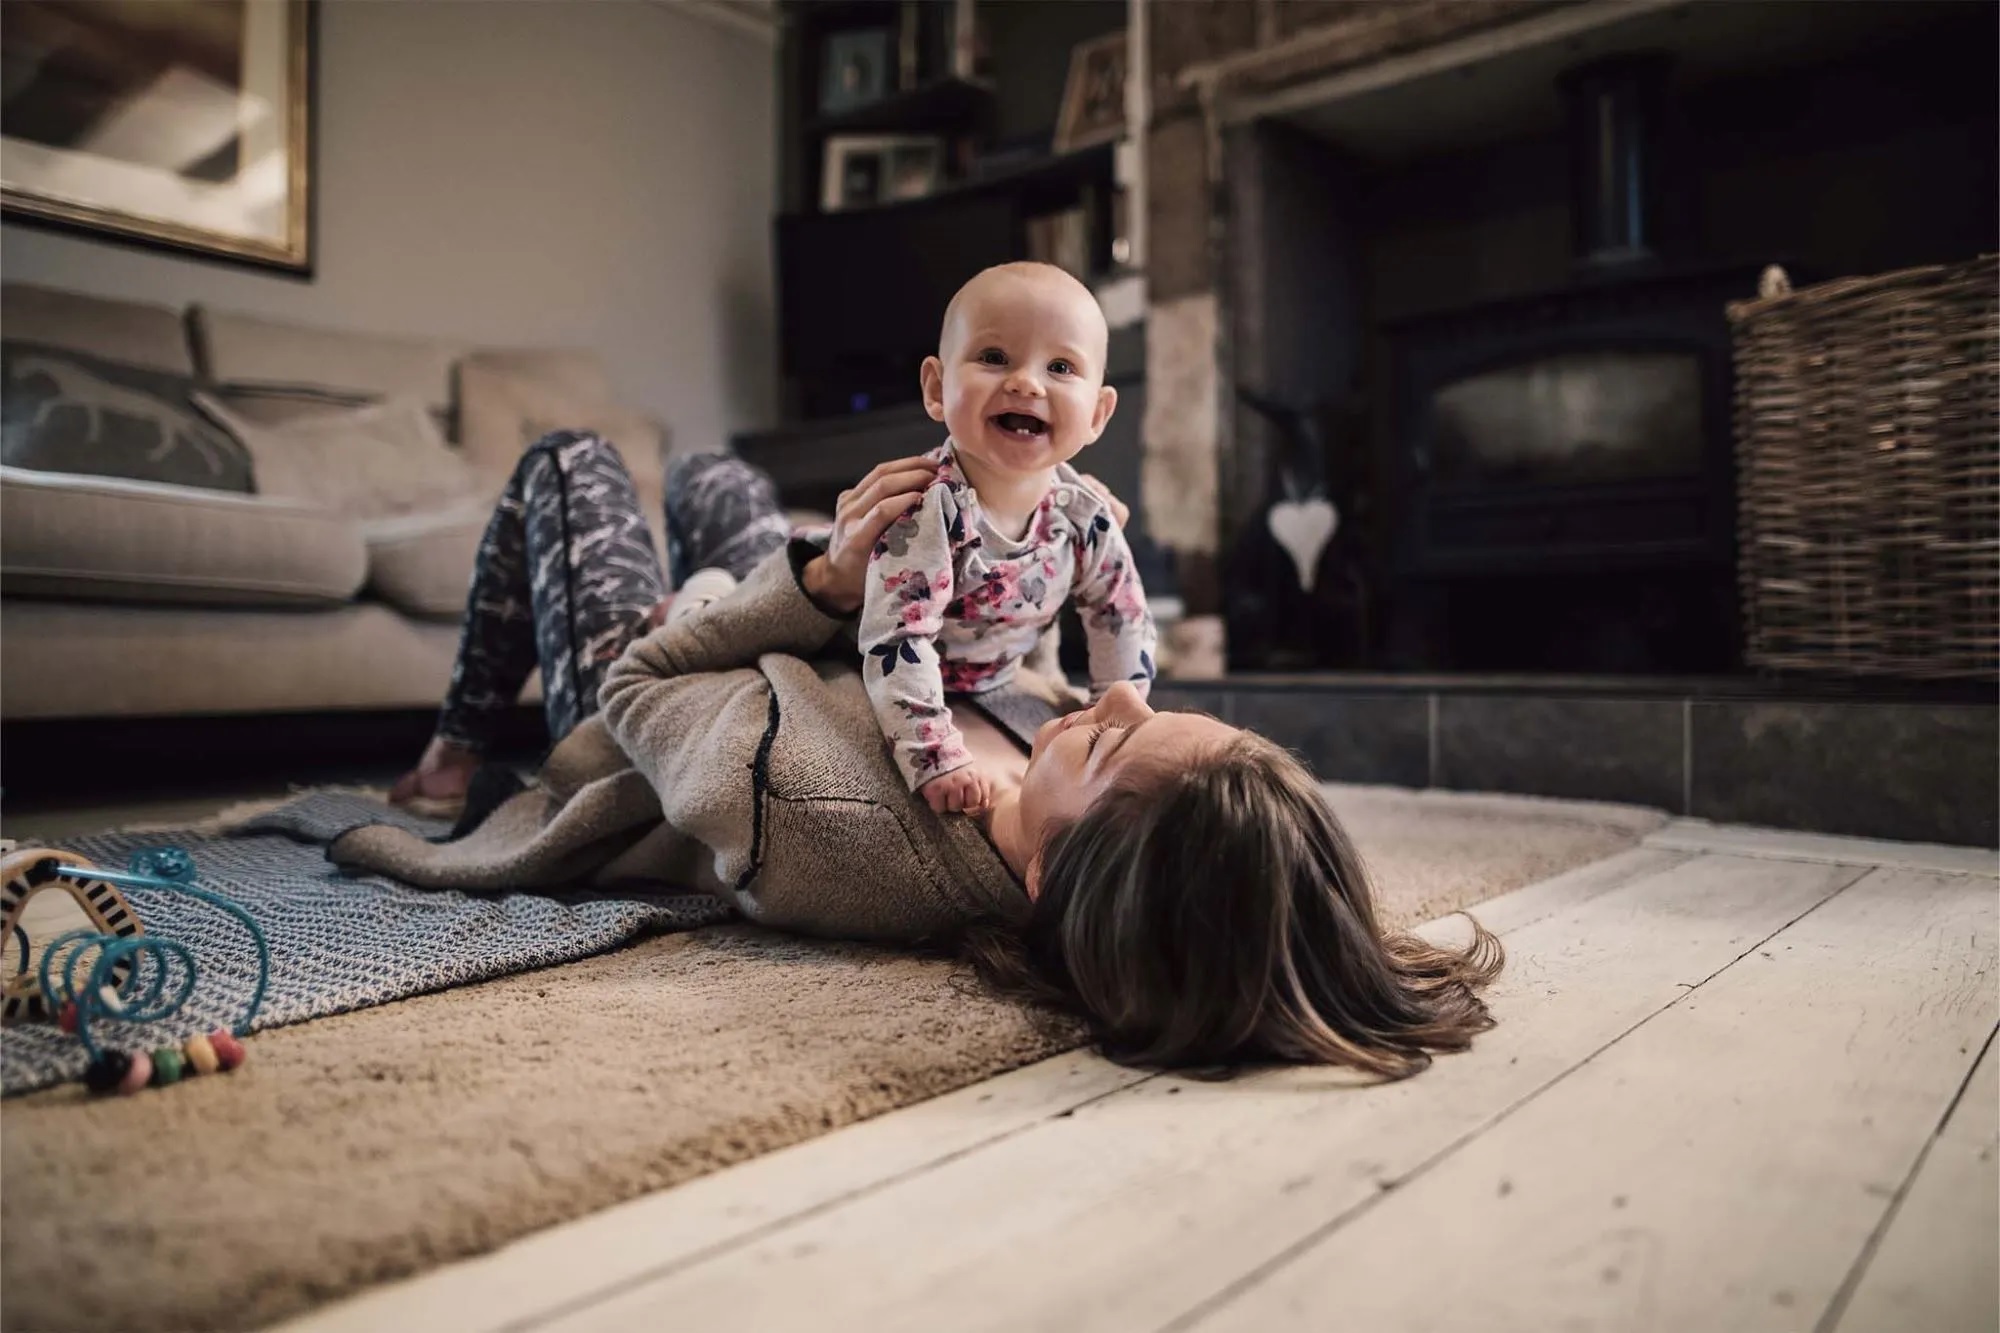 Eine Mutter liegt mit ihrem Baby auf dem Teppich des Wohnzimmers. Das Baby krabbelt auf ihrem Bauch und lacht.